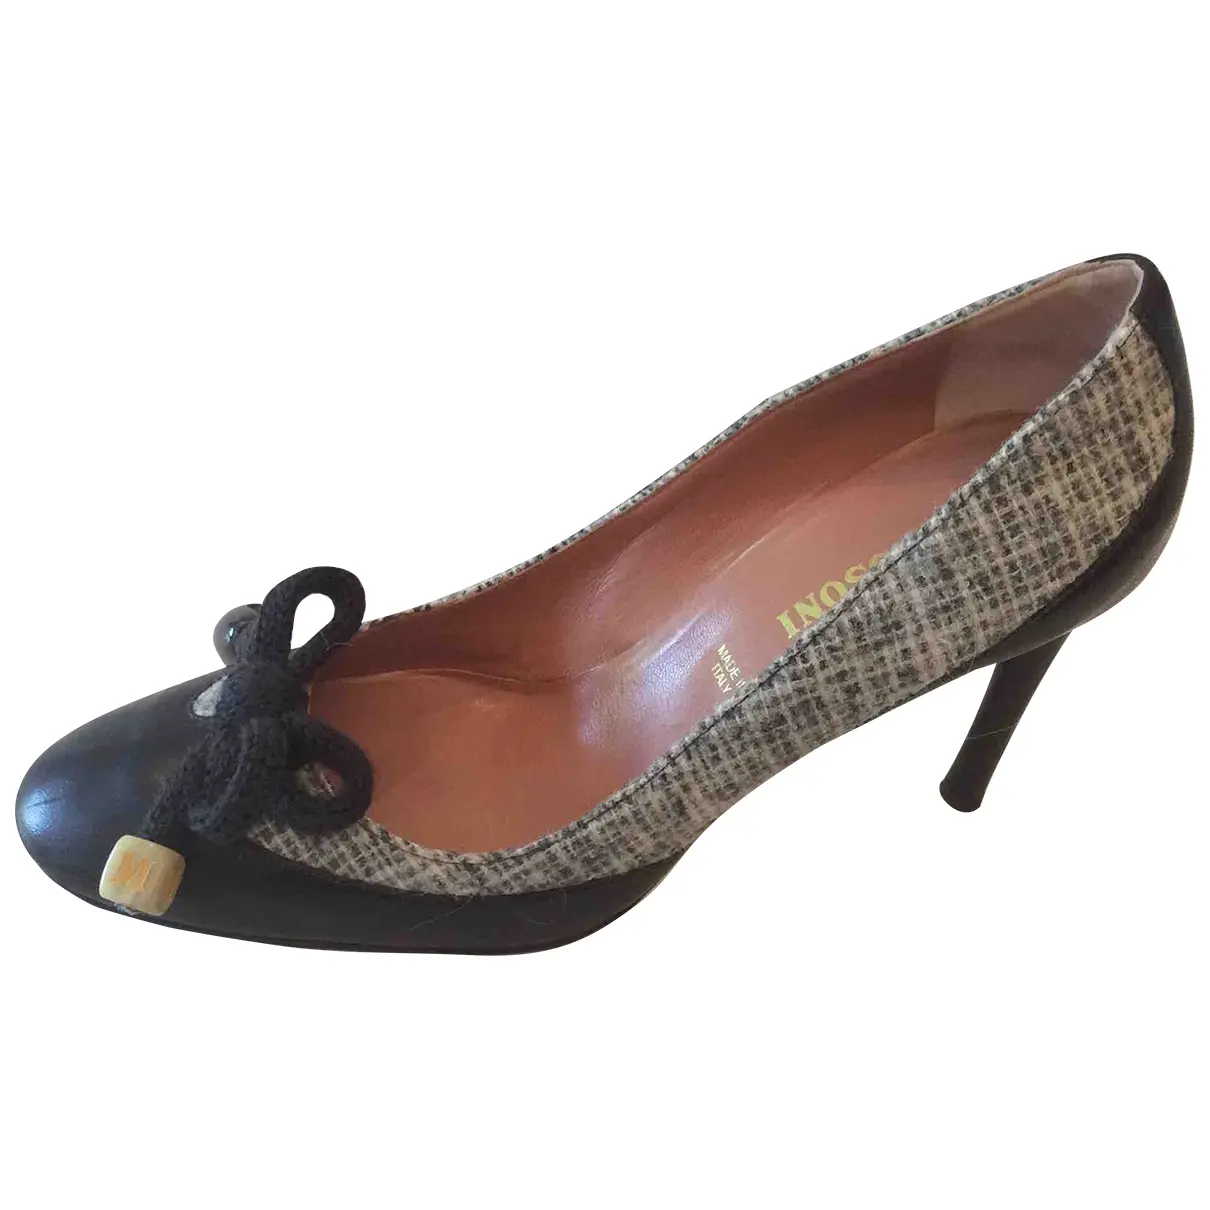 Leather heels Missoni